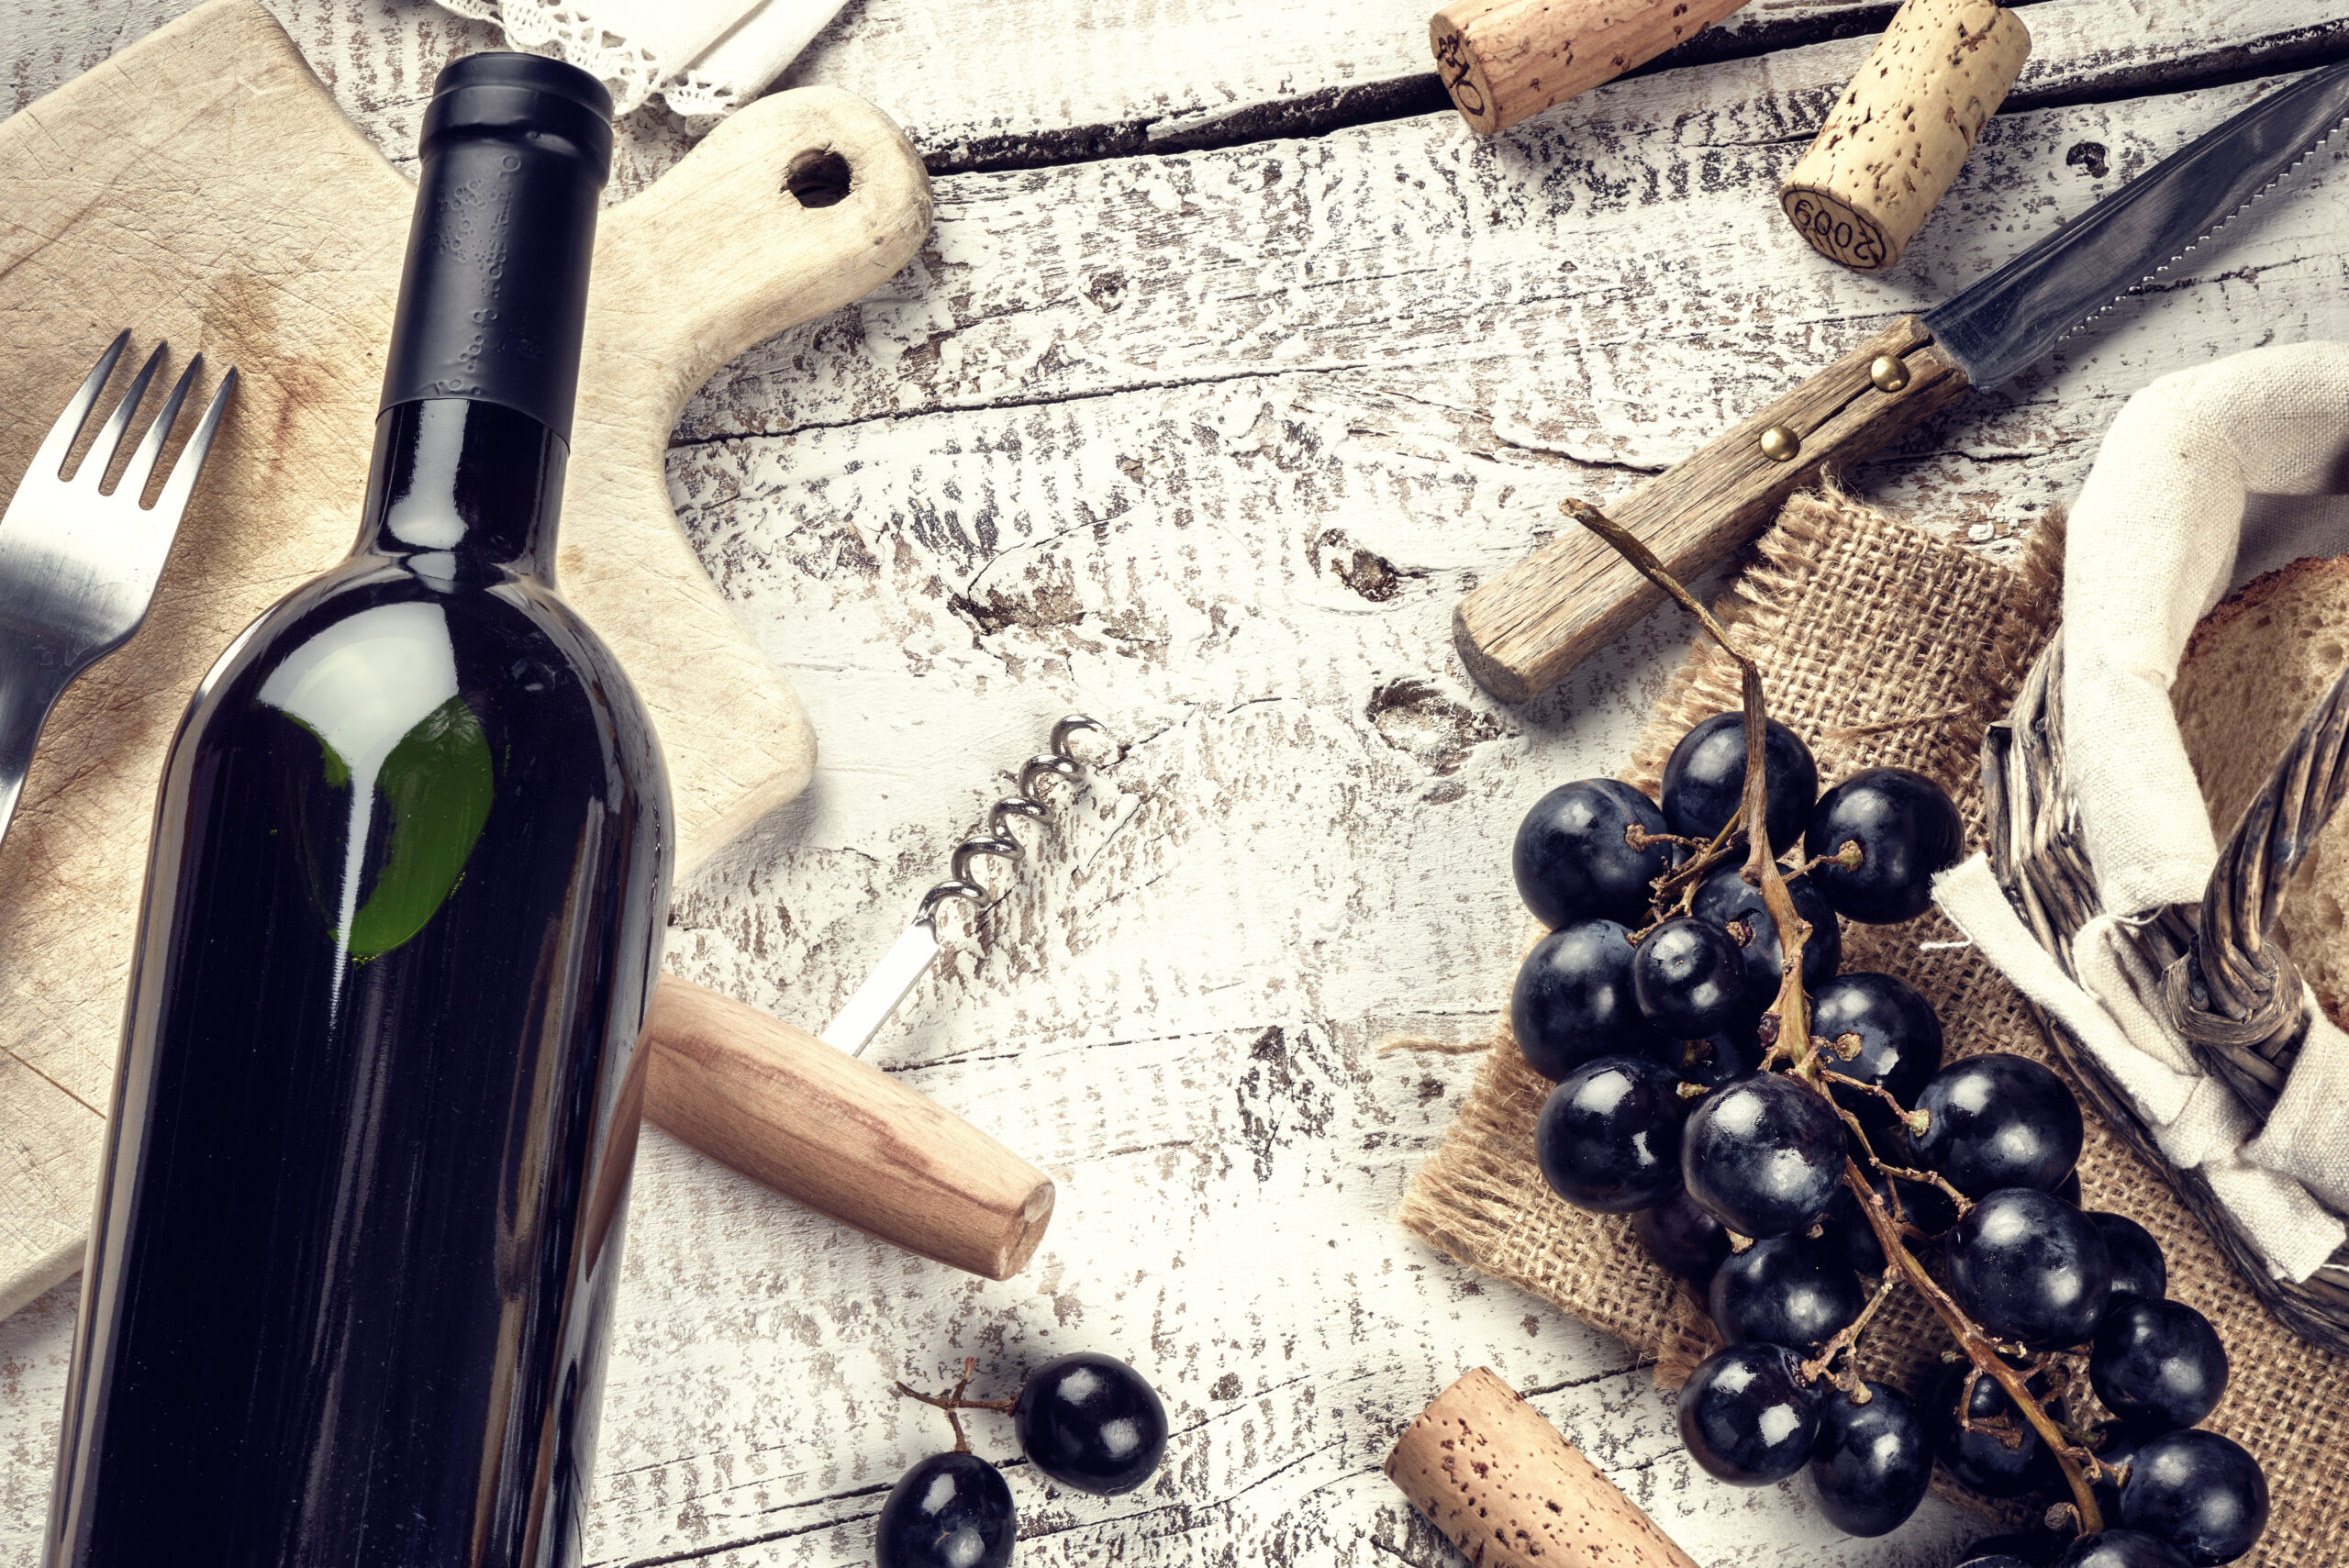 Gutscheine kaufen und individuelle Weinseminare der Weinakademie Retz buchen